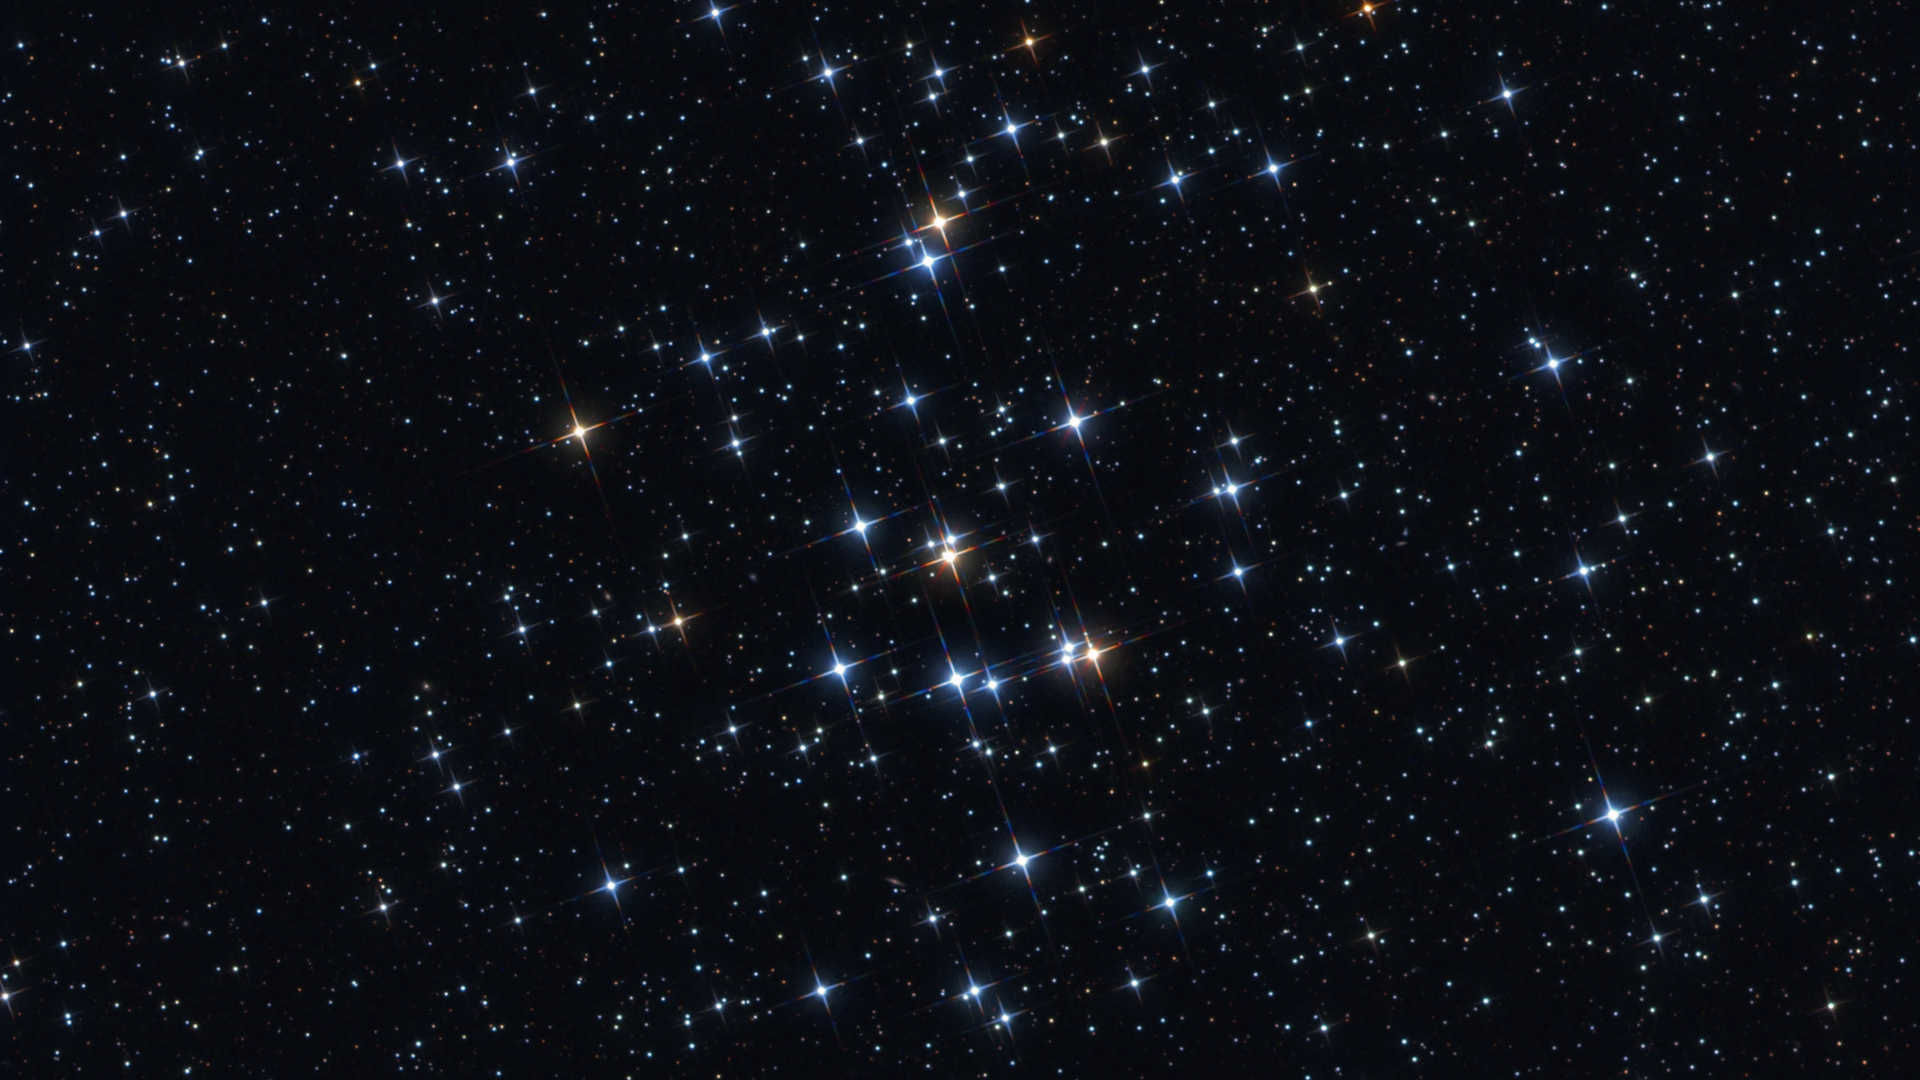 Roiul stelar deschis M 44 se arată în toată splendoarea pe cerul de primăvară. Mario Weigand